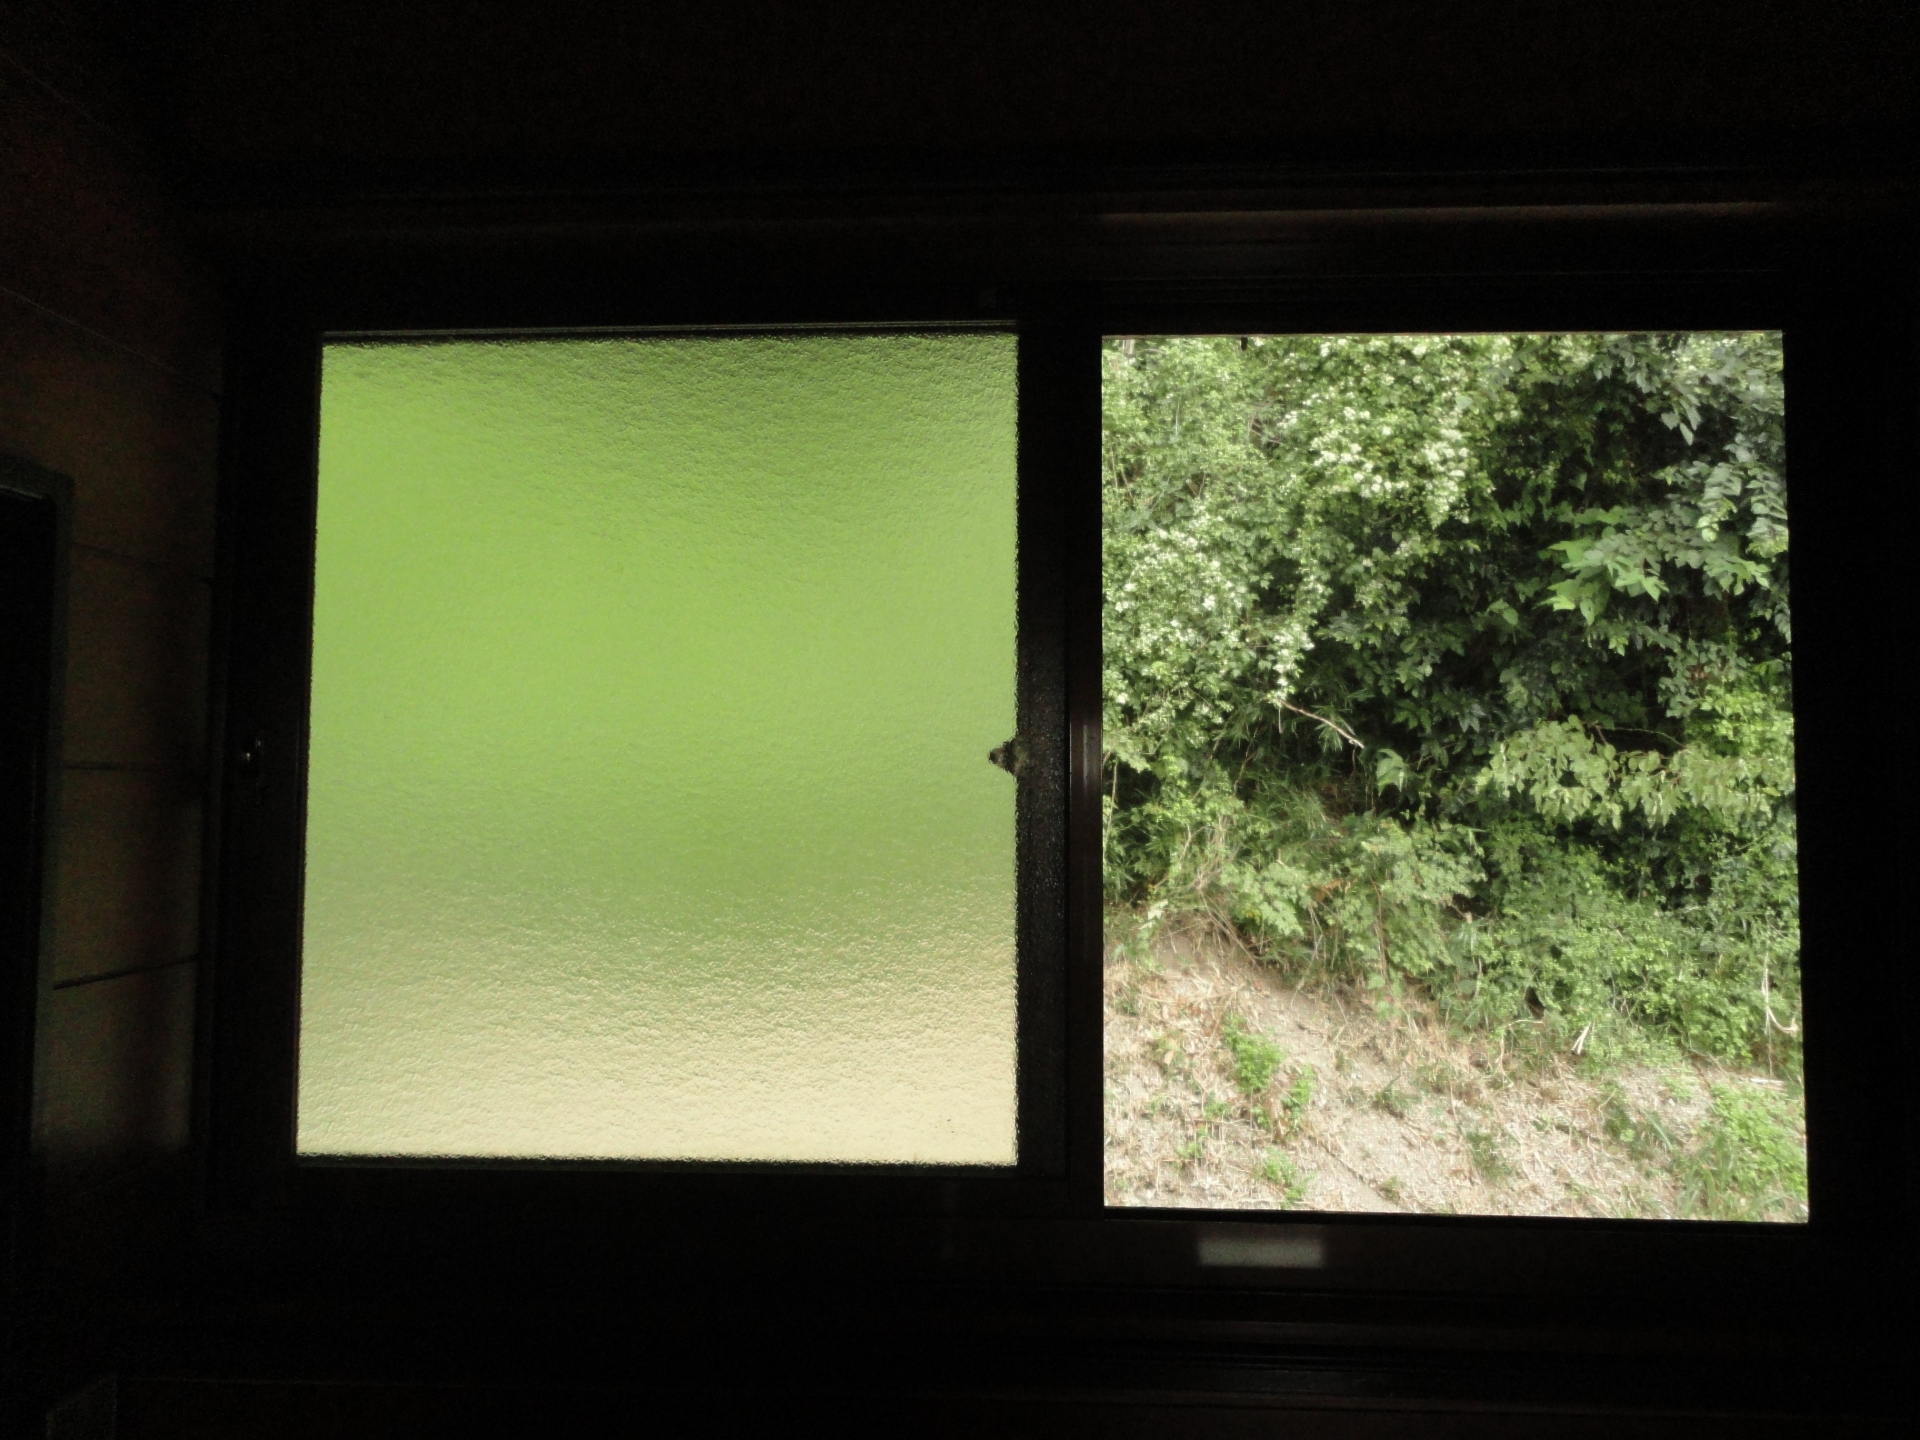 カーテン・窓・雨戸を開放